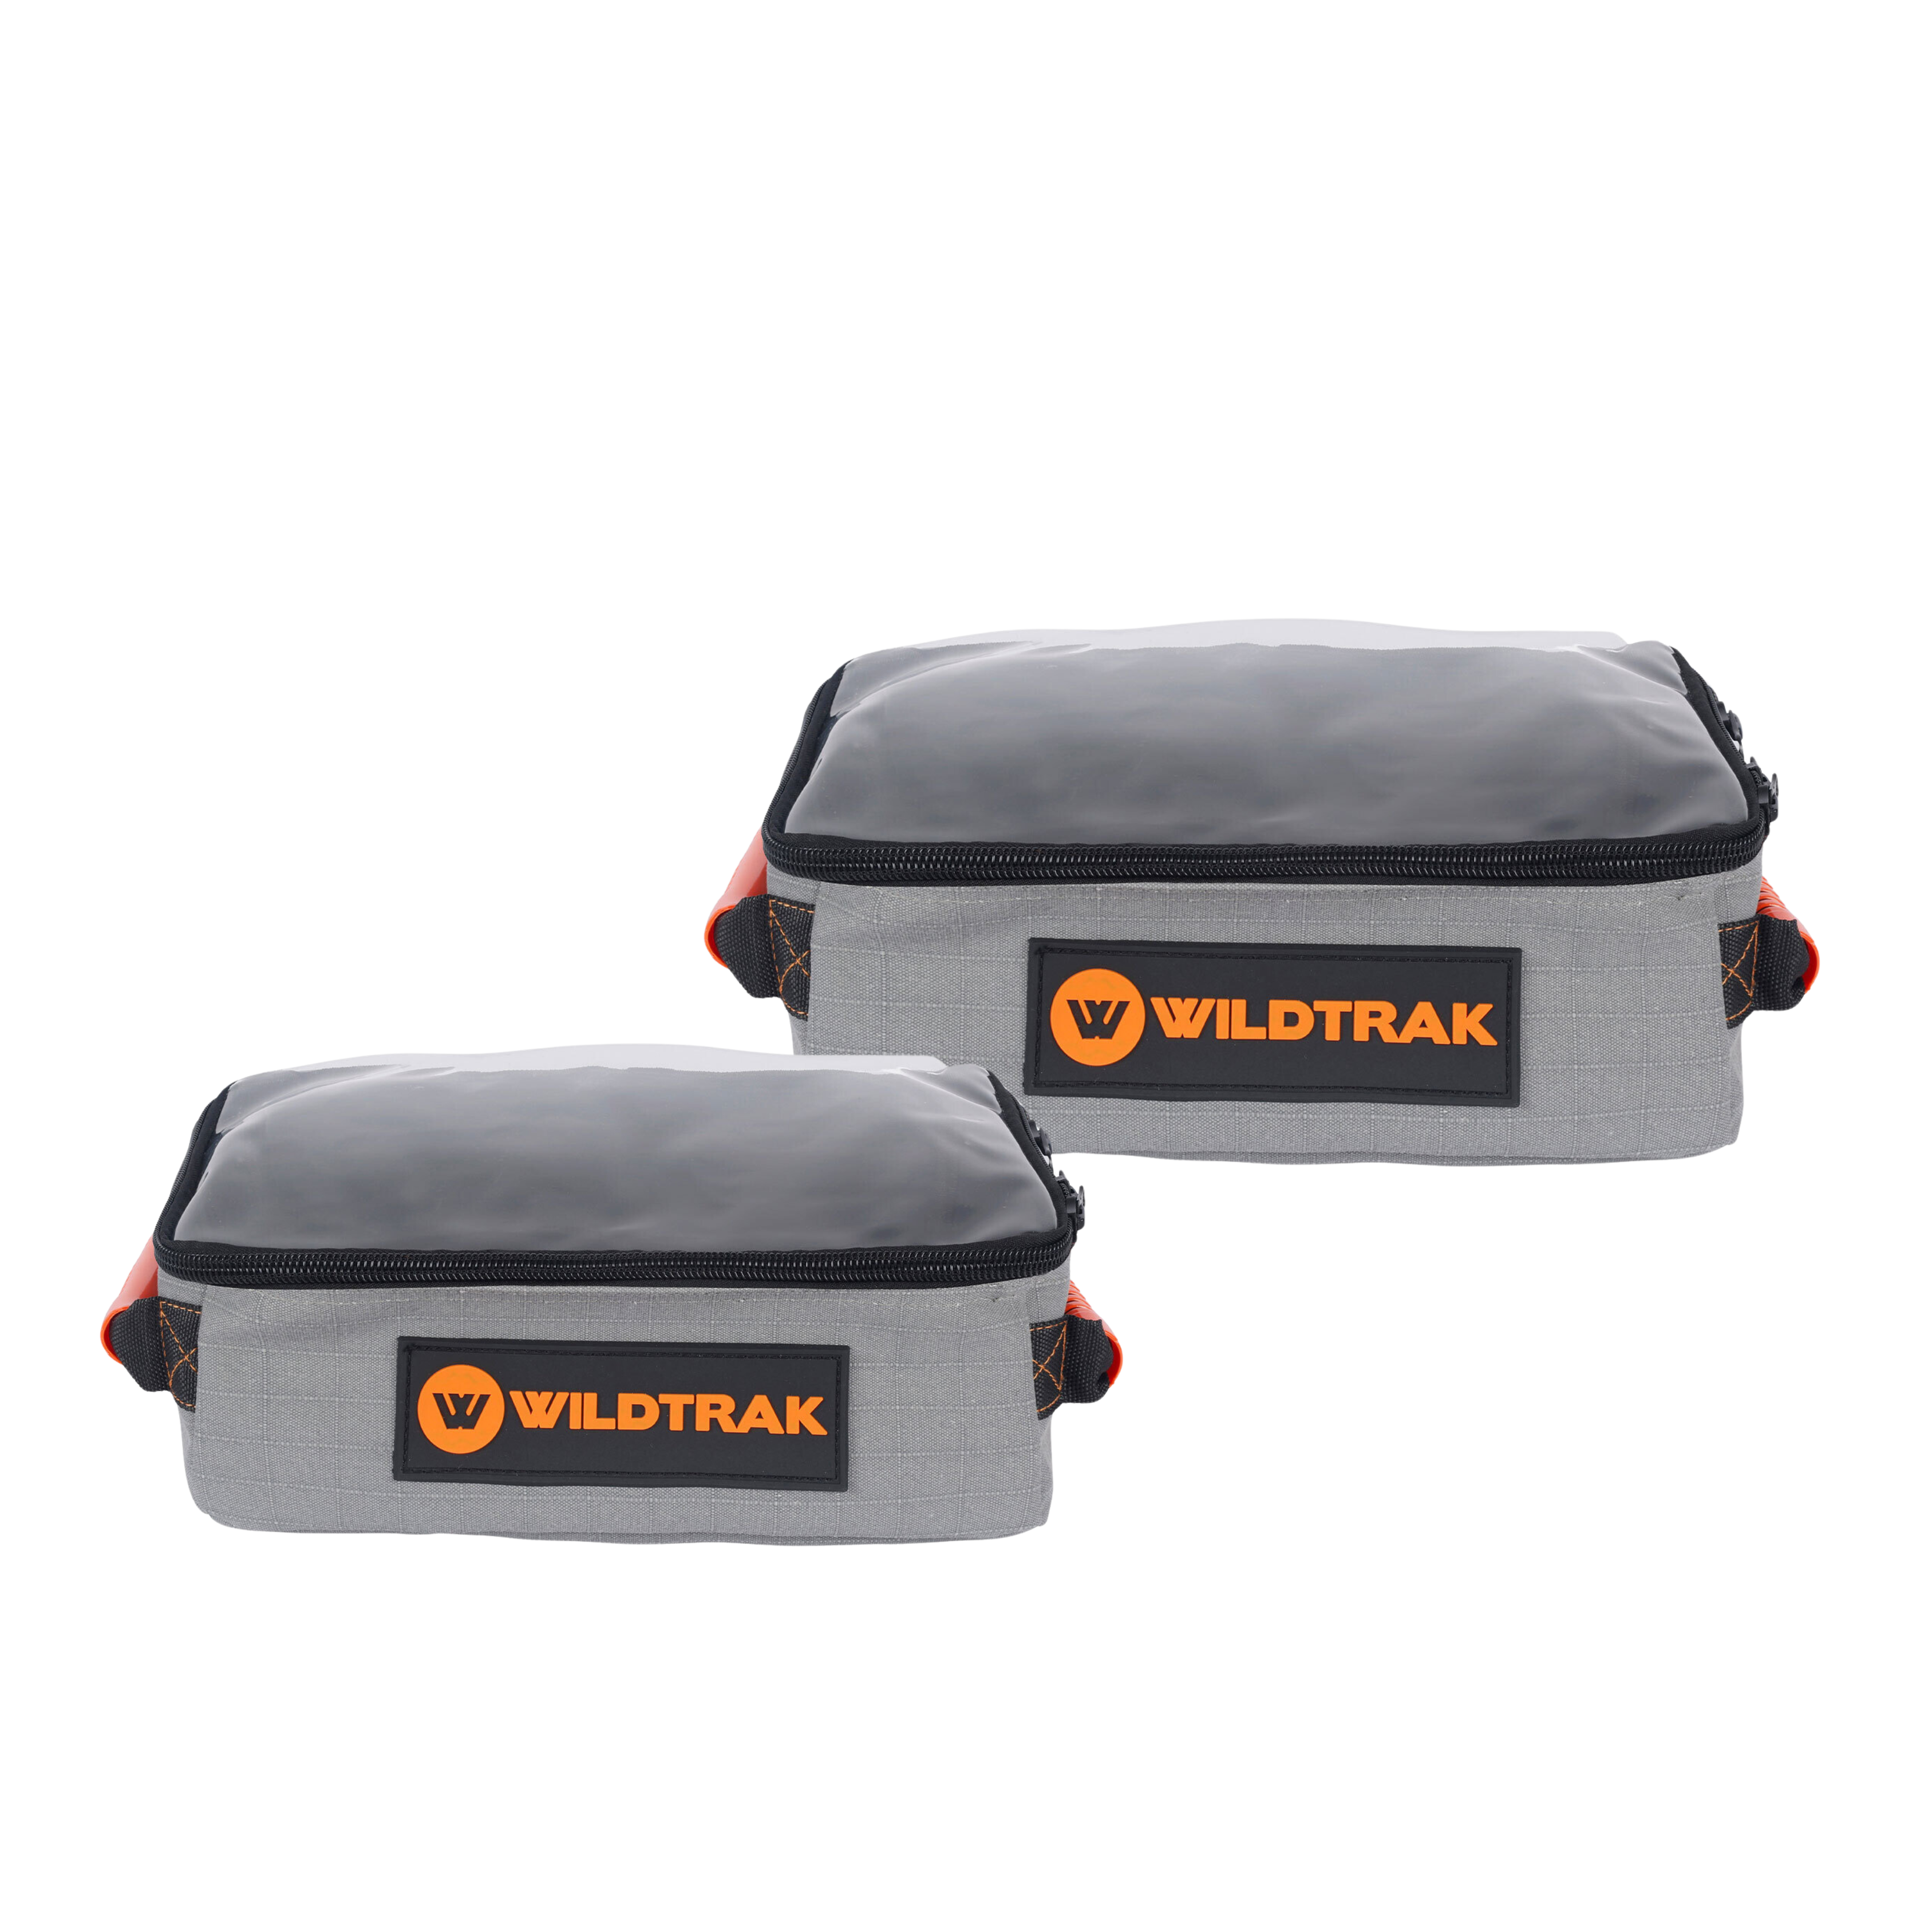 Wildtrak Explorer Clear Top 2 Bag Bundle (Sml/Med)